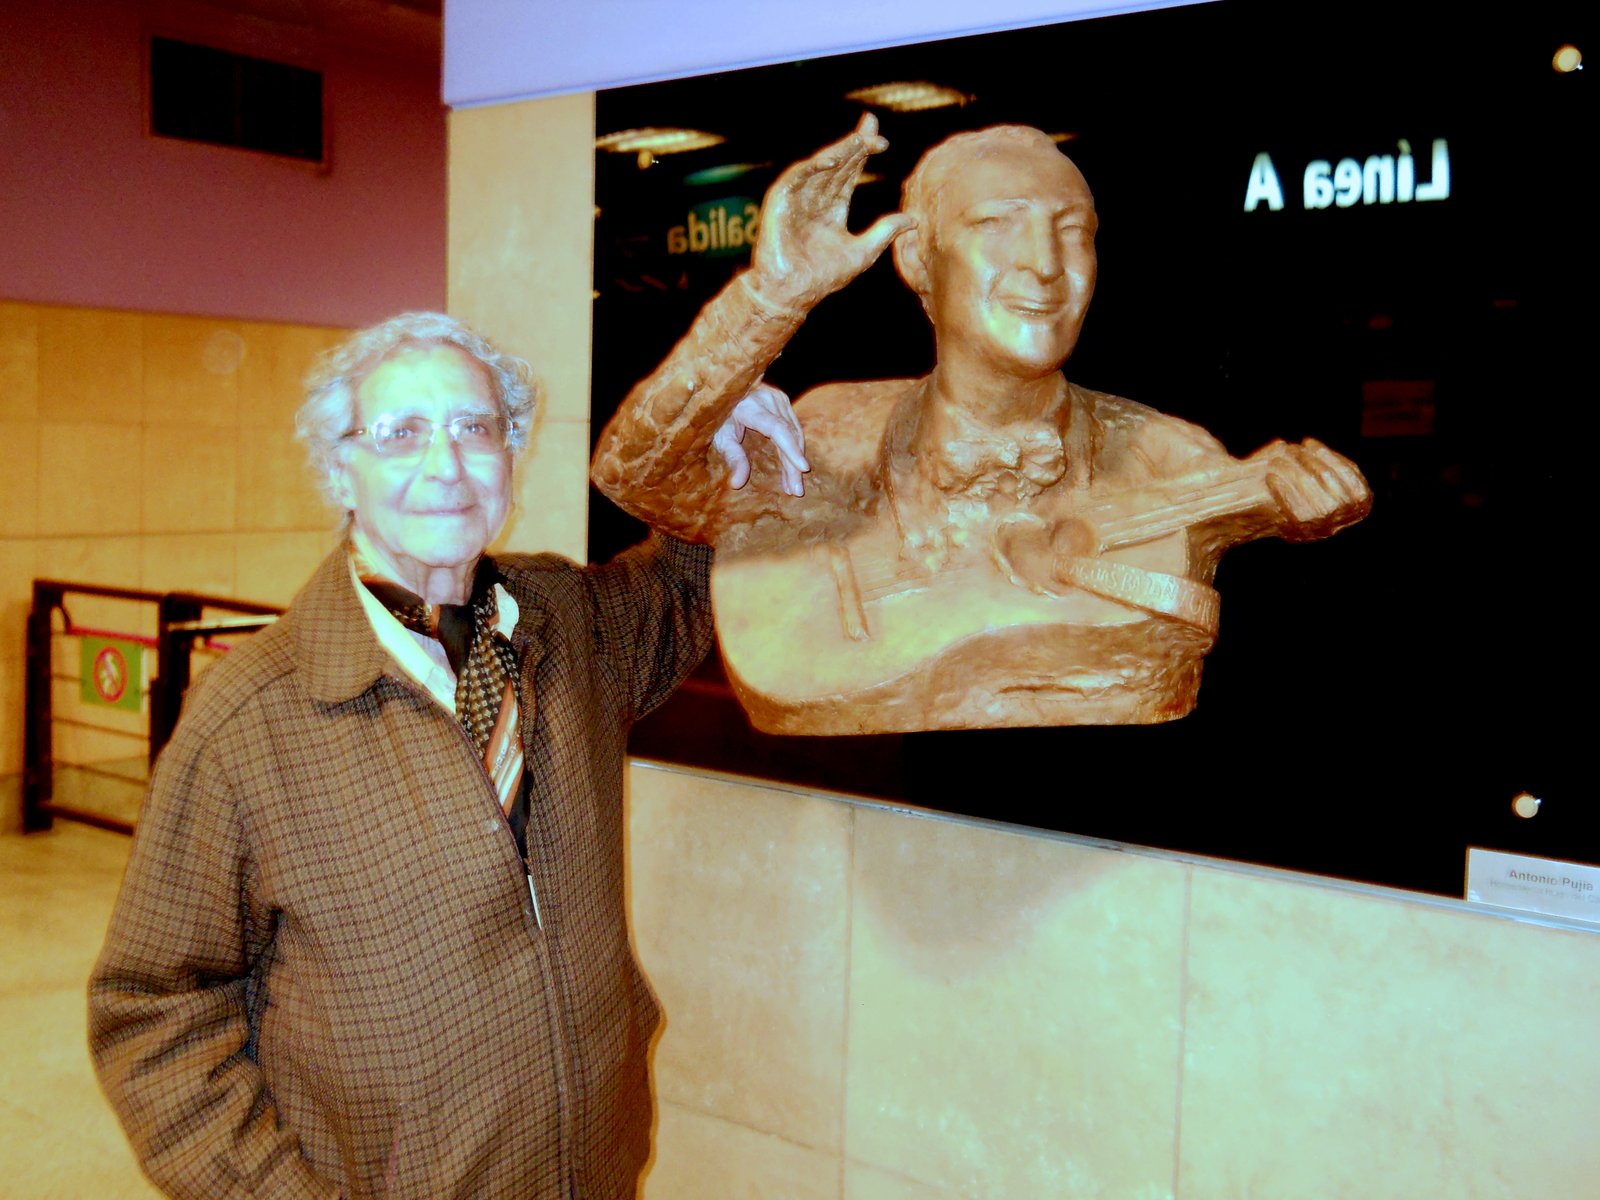 Antonio Pujía y la escultura que recuerda a Hugo del Carril, en la estación "San Pedrito".